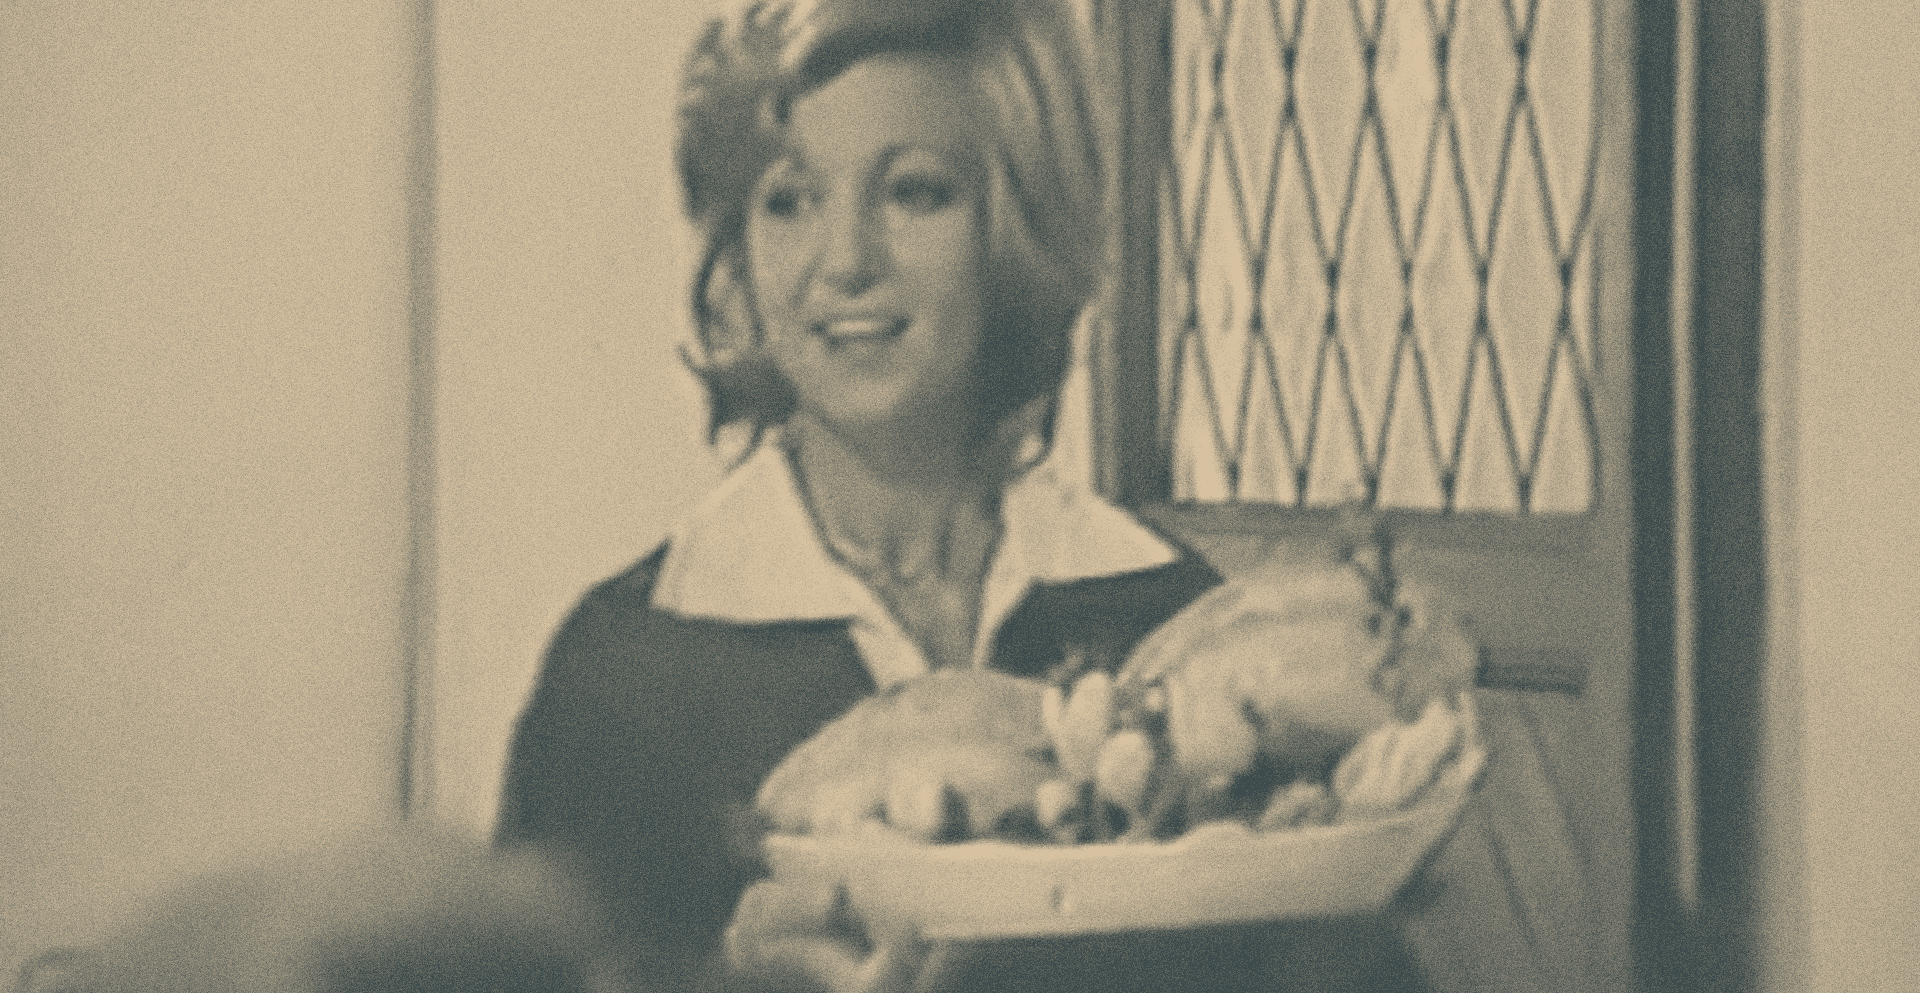 Frame dello spot pubblicitario tv del 1970 del pollo AIA, Agricola Italiana Alimentare